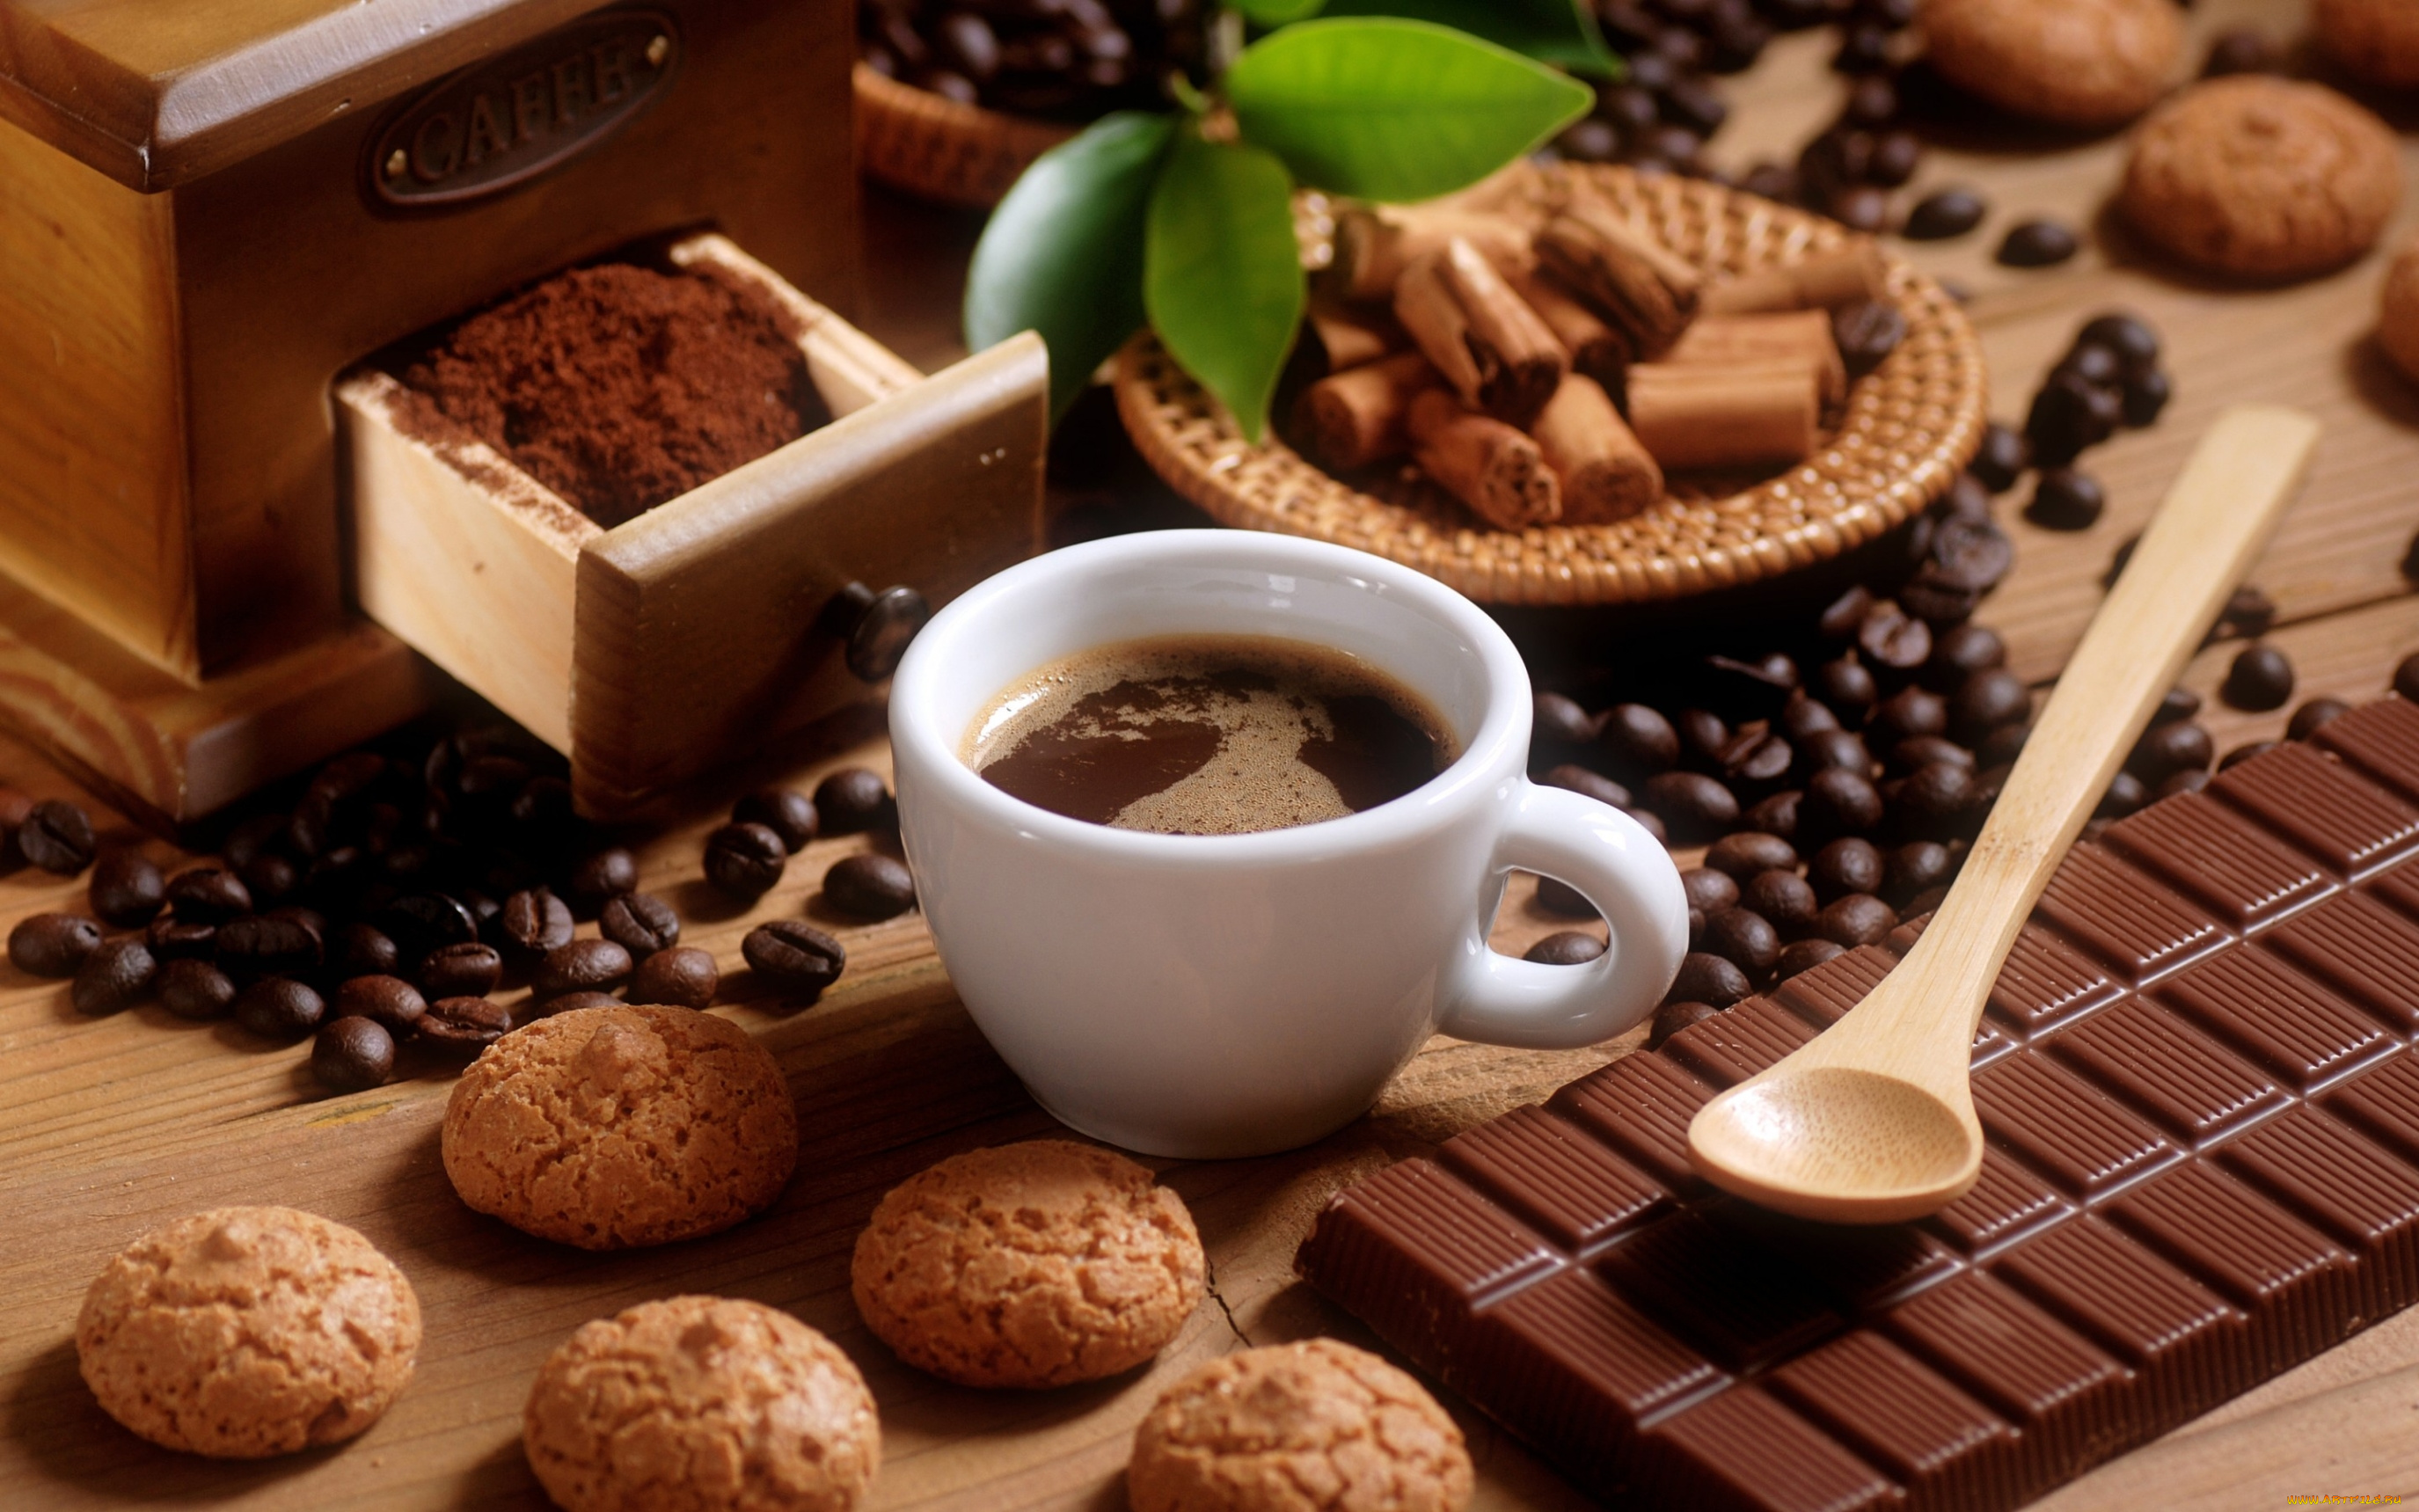 еда, кофе, , кофейные, зёрна, печенье, шоколад, молочный, плитка, зерна, чашка, ложка, листья, корица, десерт